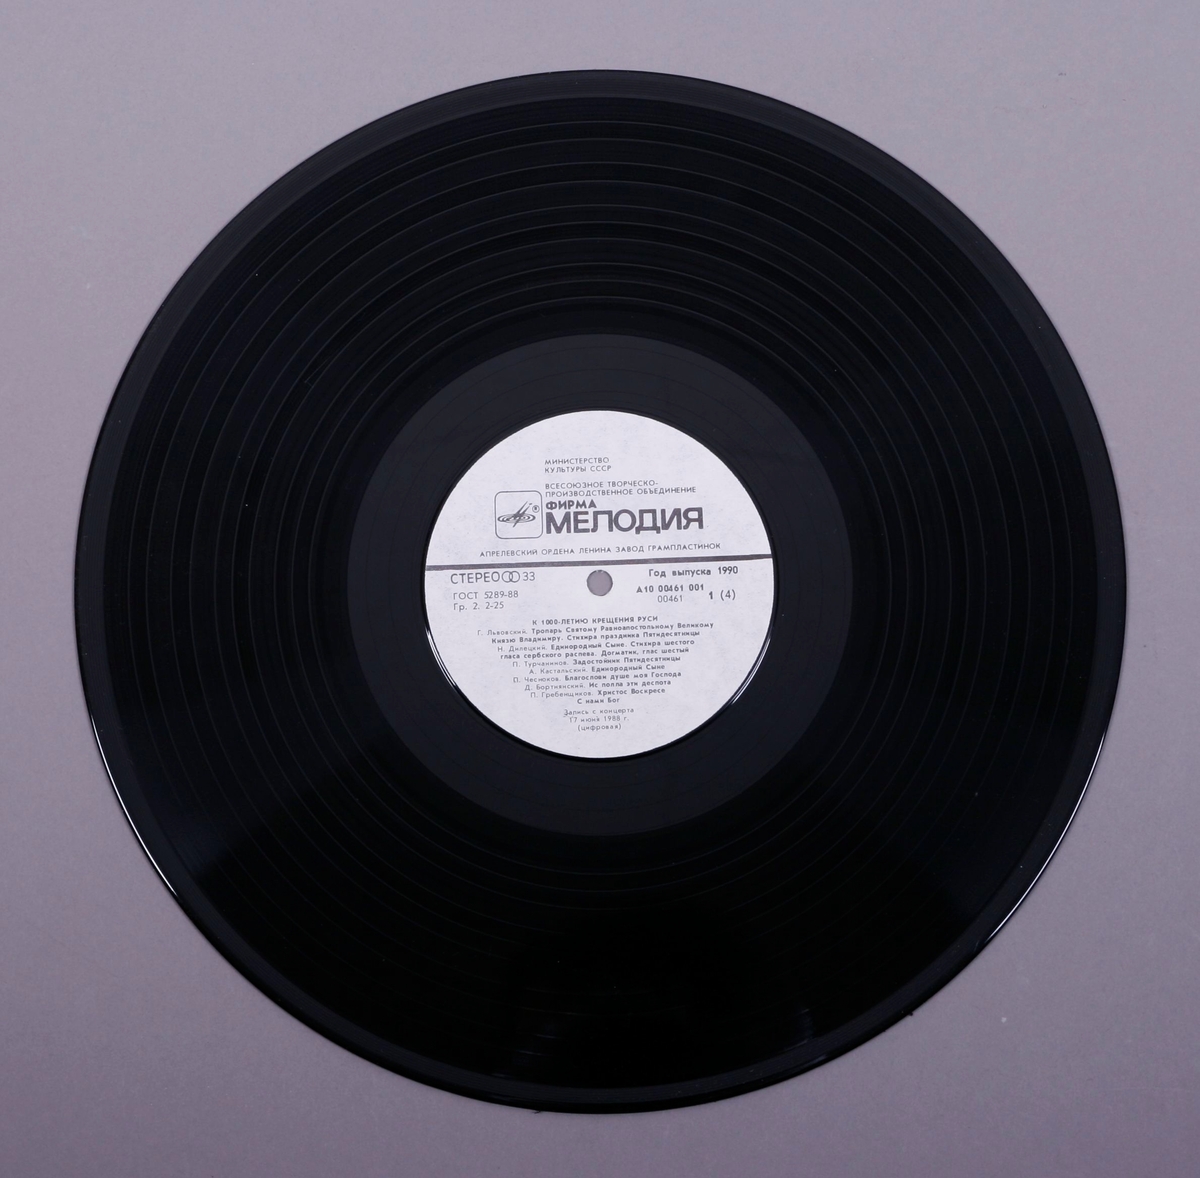 To grammofonplater i svart vinyl og dobbelt plateomslag i papp. Platene ligger i plastlommer.